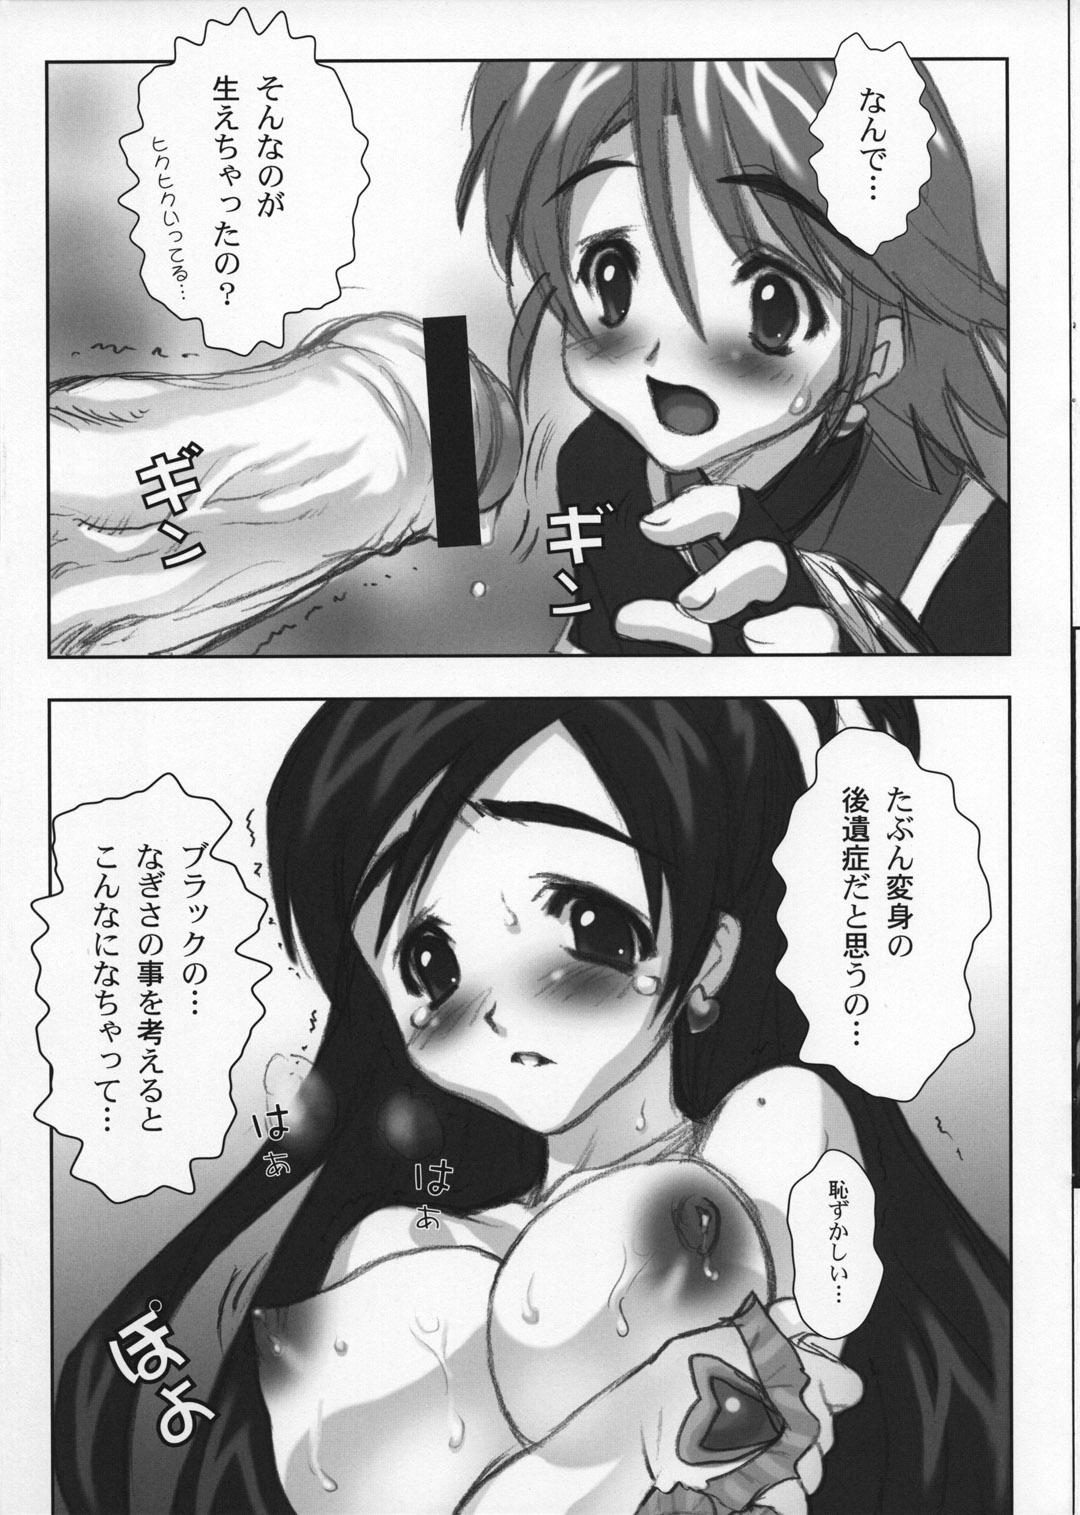 Teenager Yorokobi no Kuni vol.02 - Pretty cure Suruba - Page 10